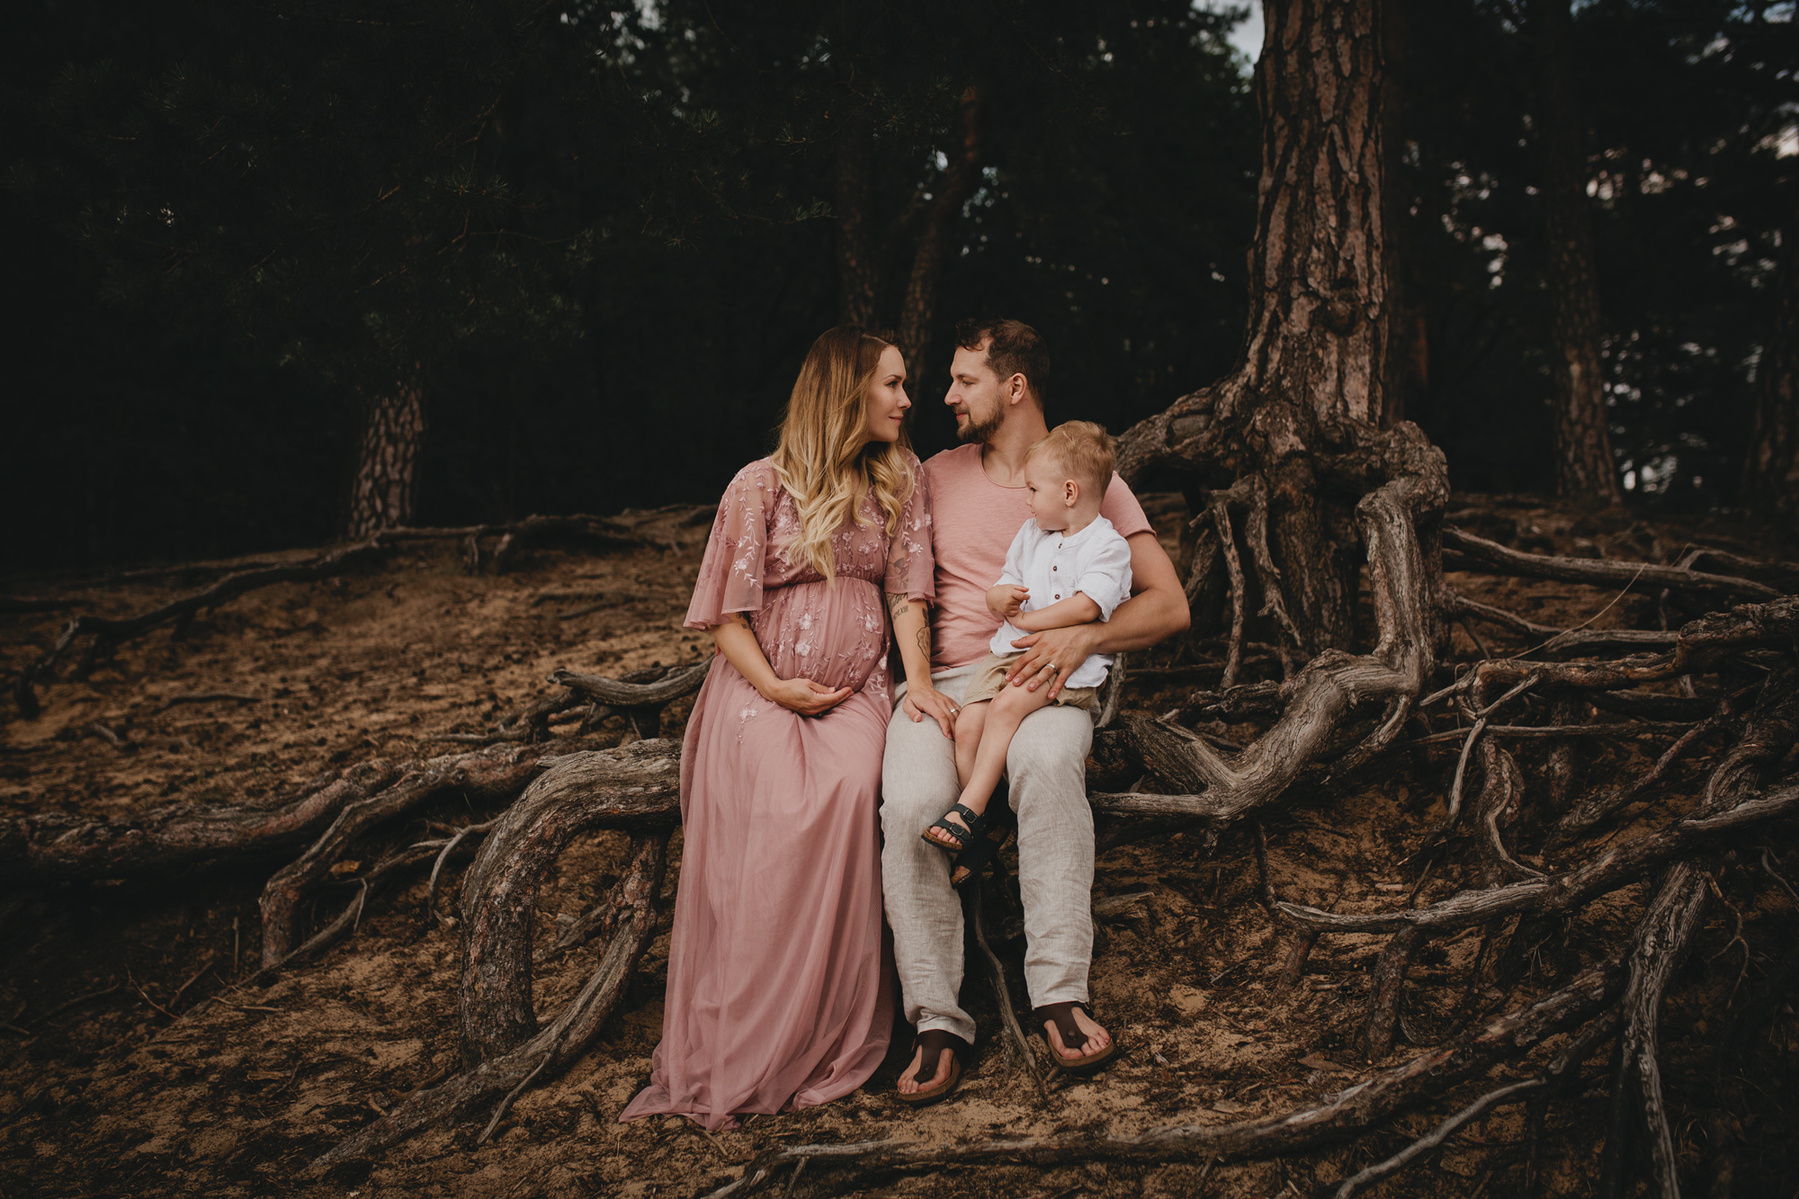 Familienfotos in der Natur mit Babybauch und abgestimmten Outfits in beige und rosé.